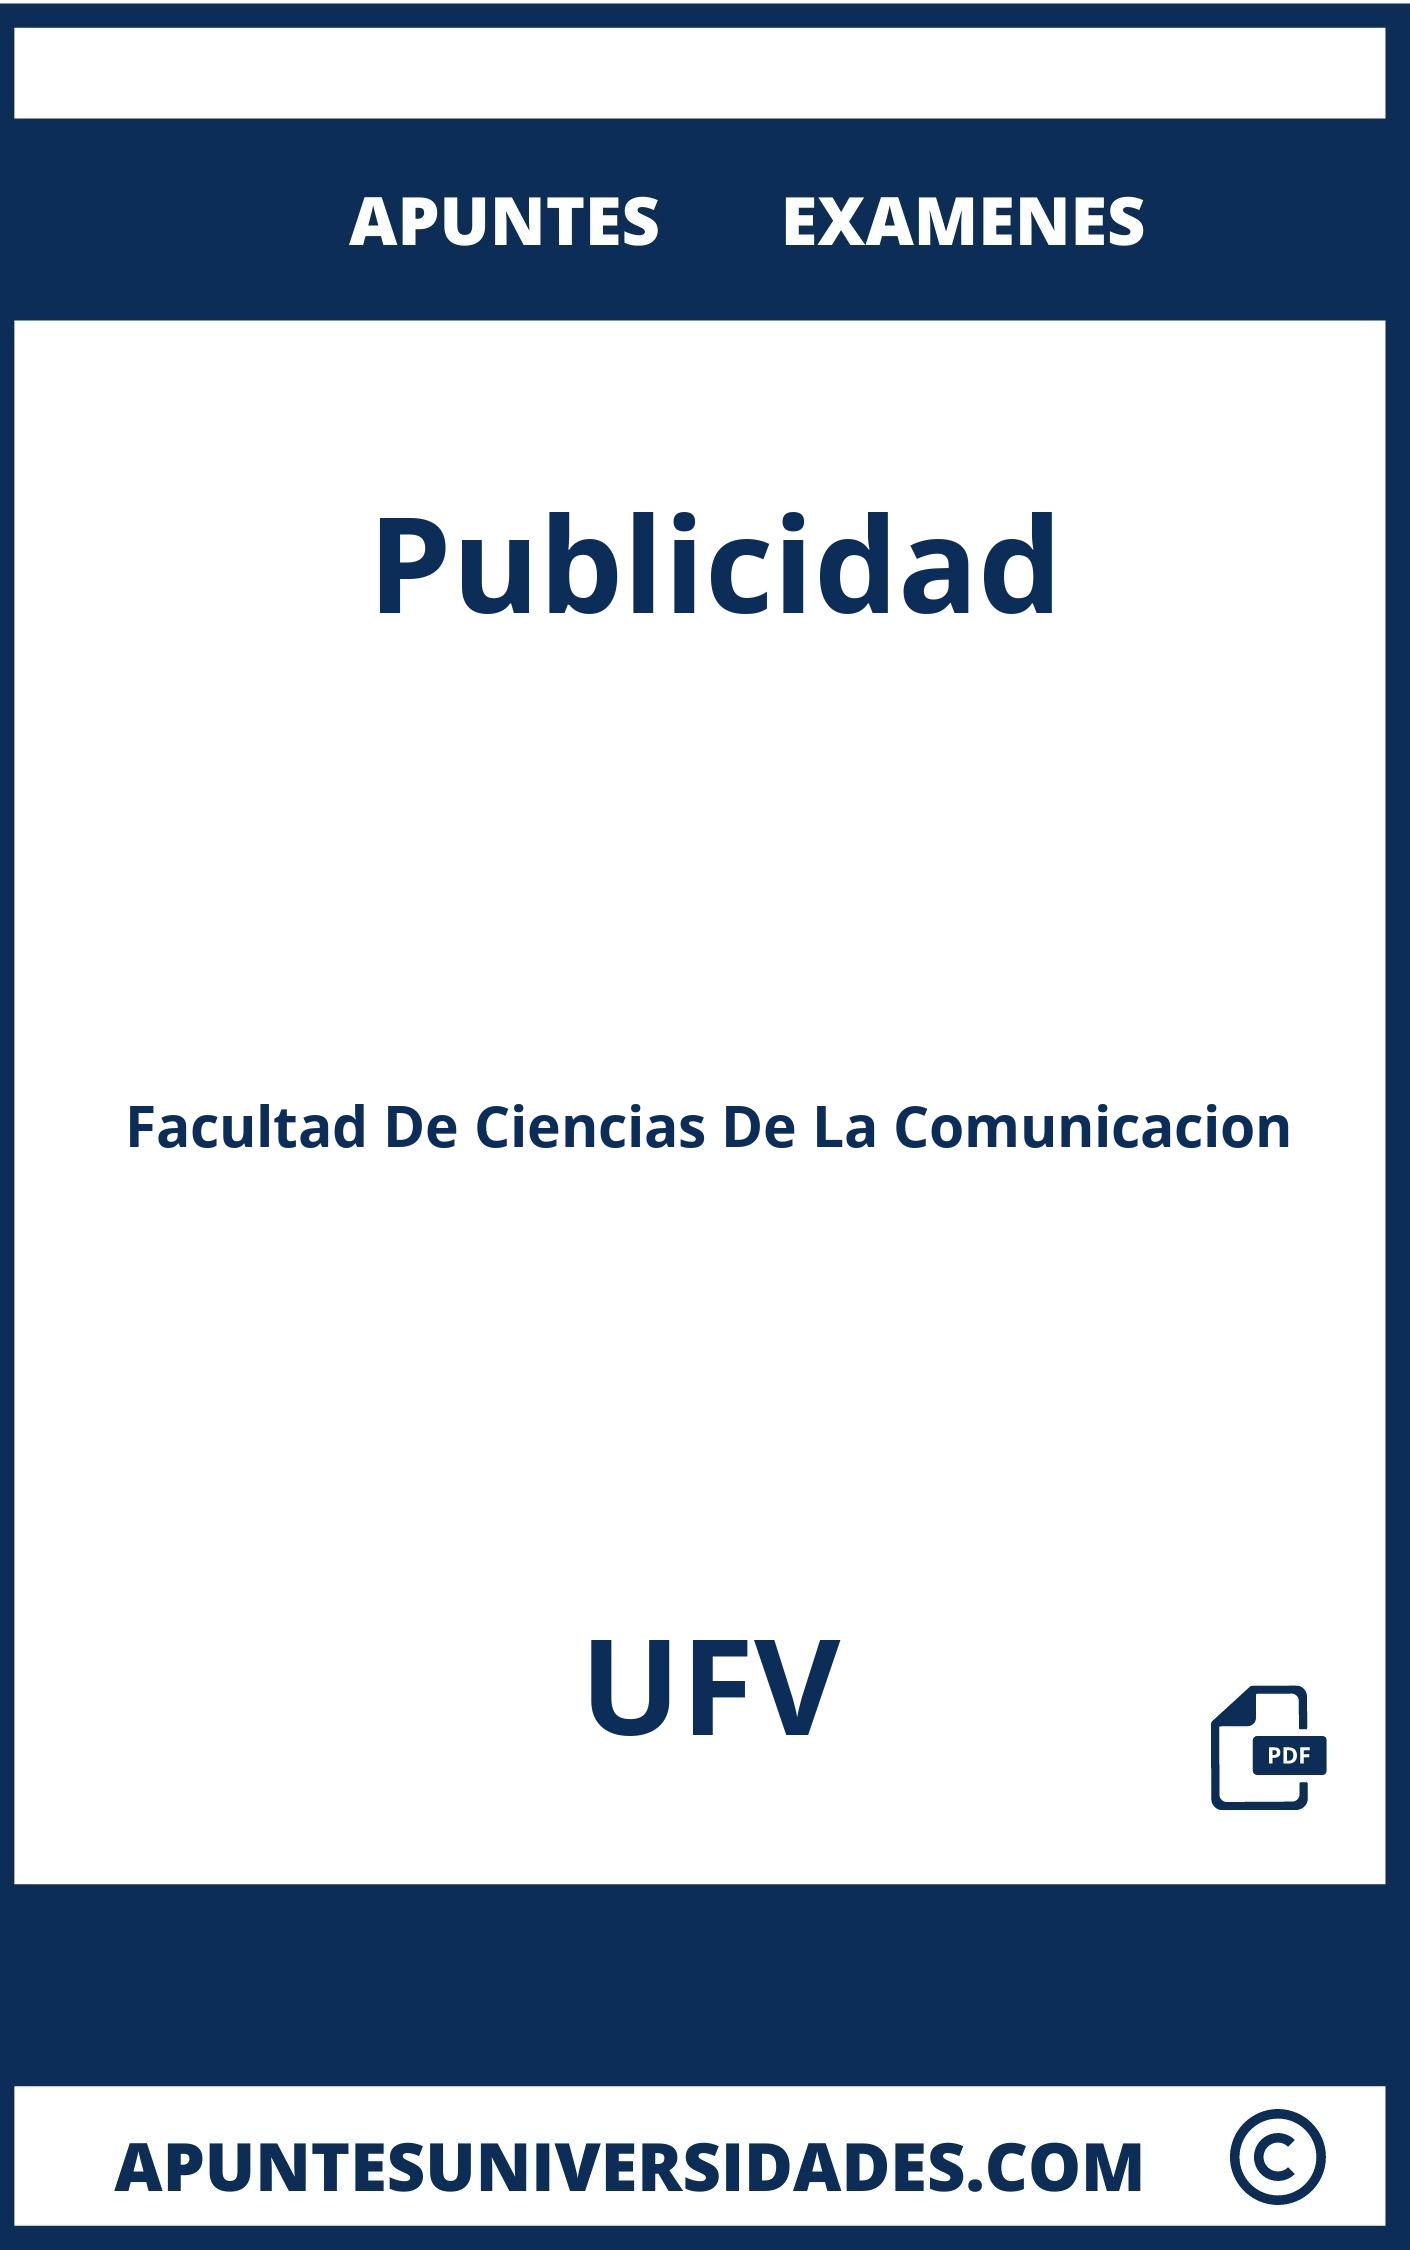 Apuntes Examenes Publicidad UFV